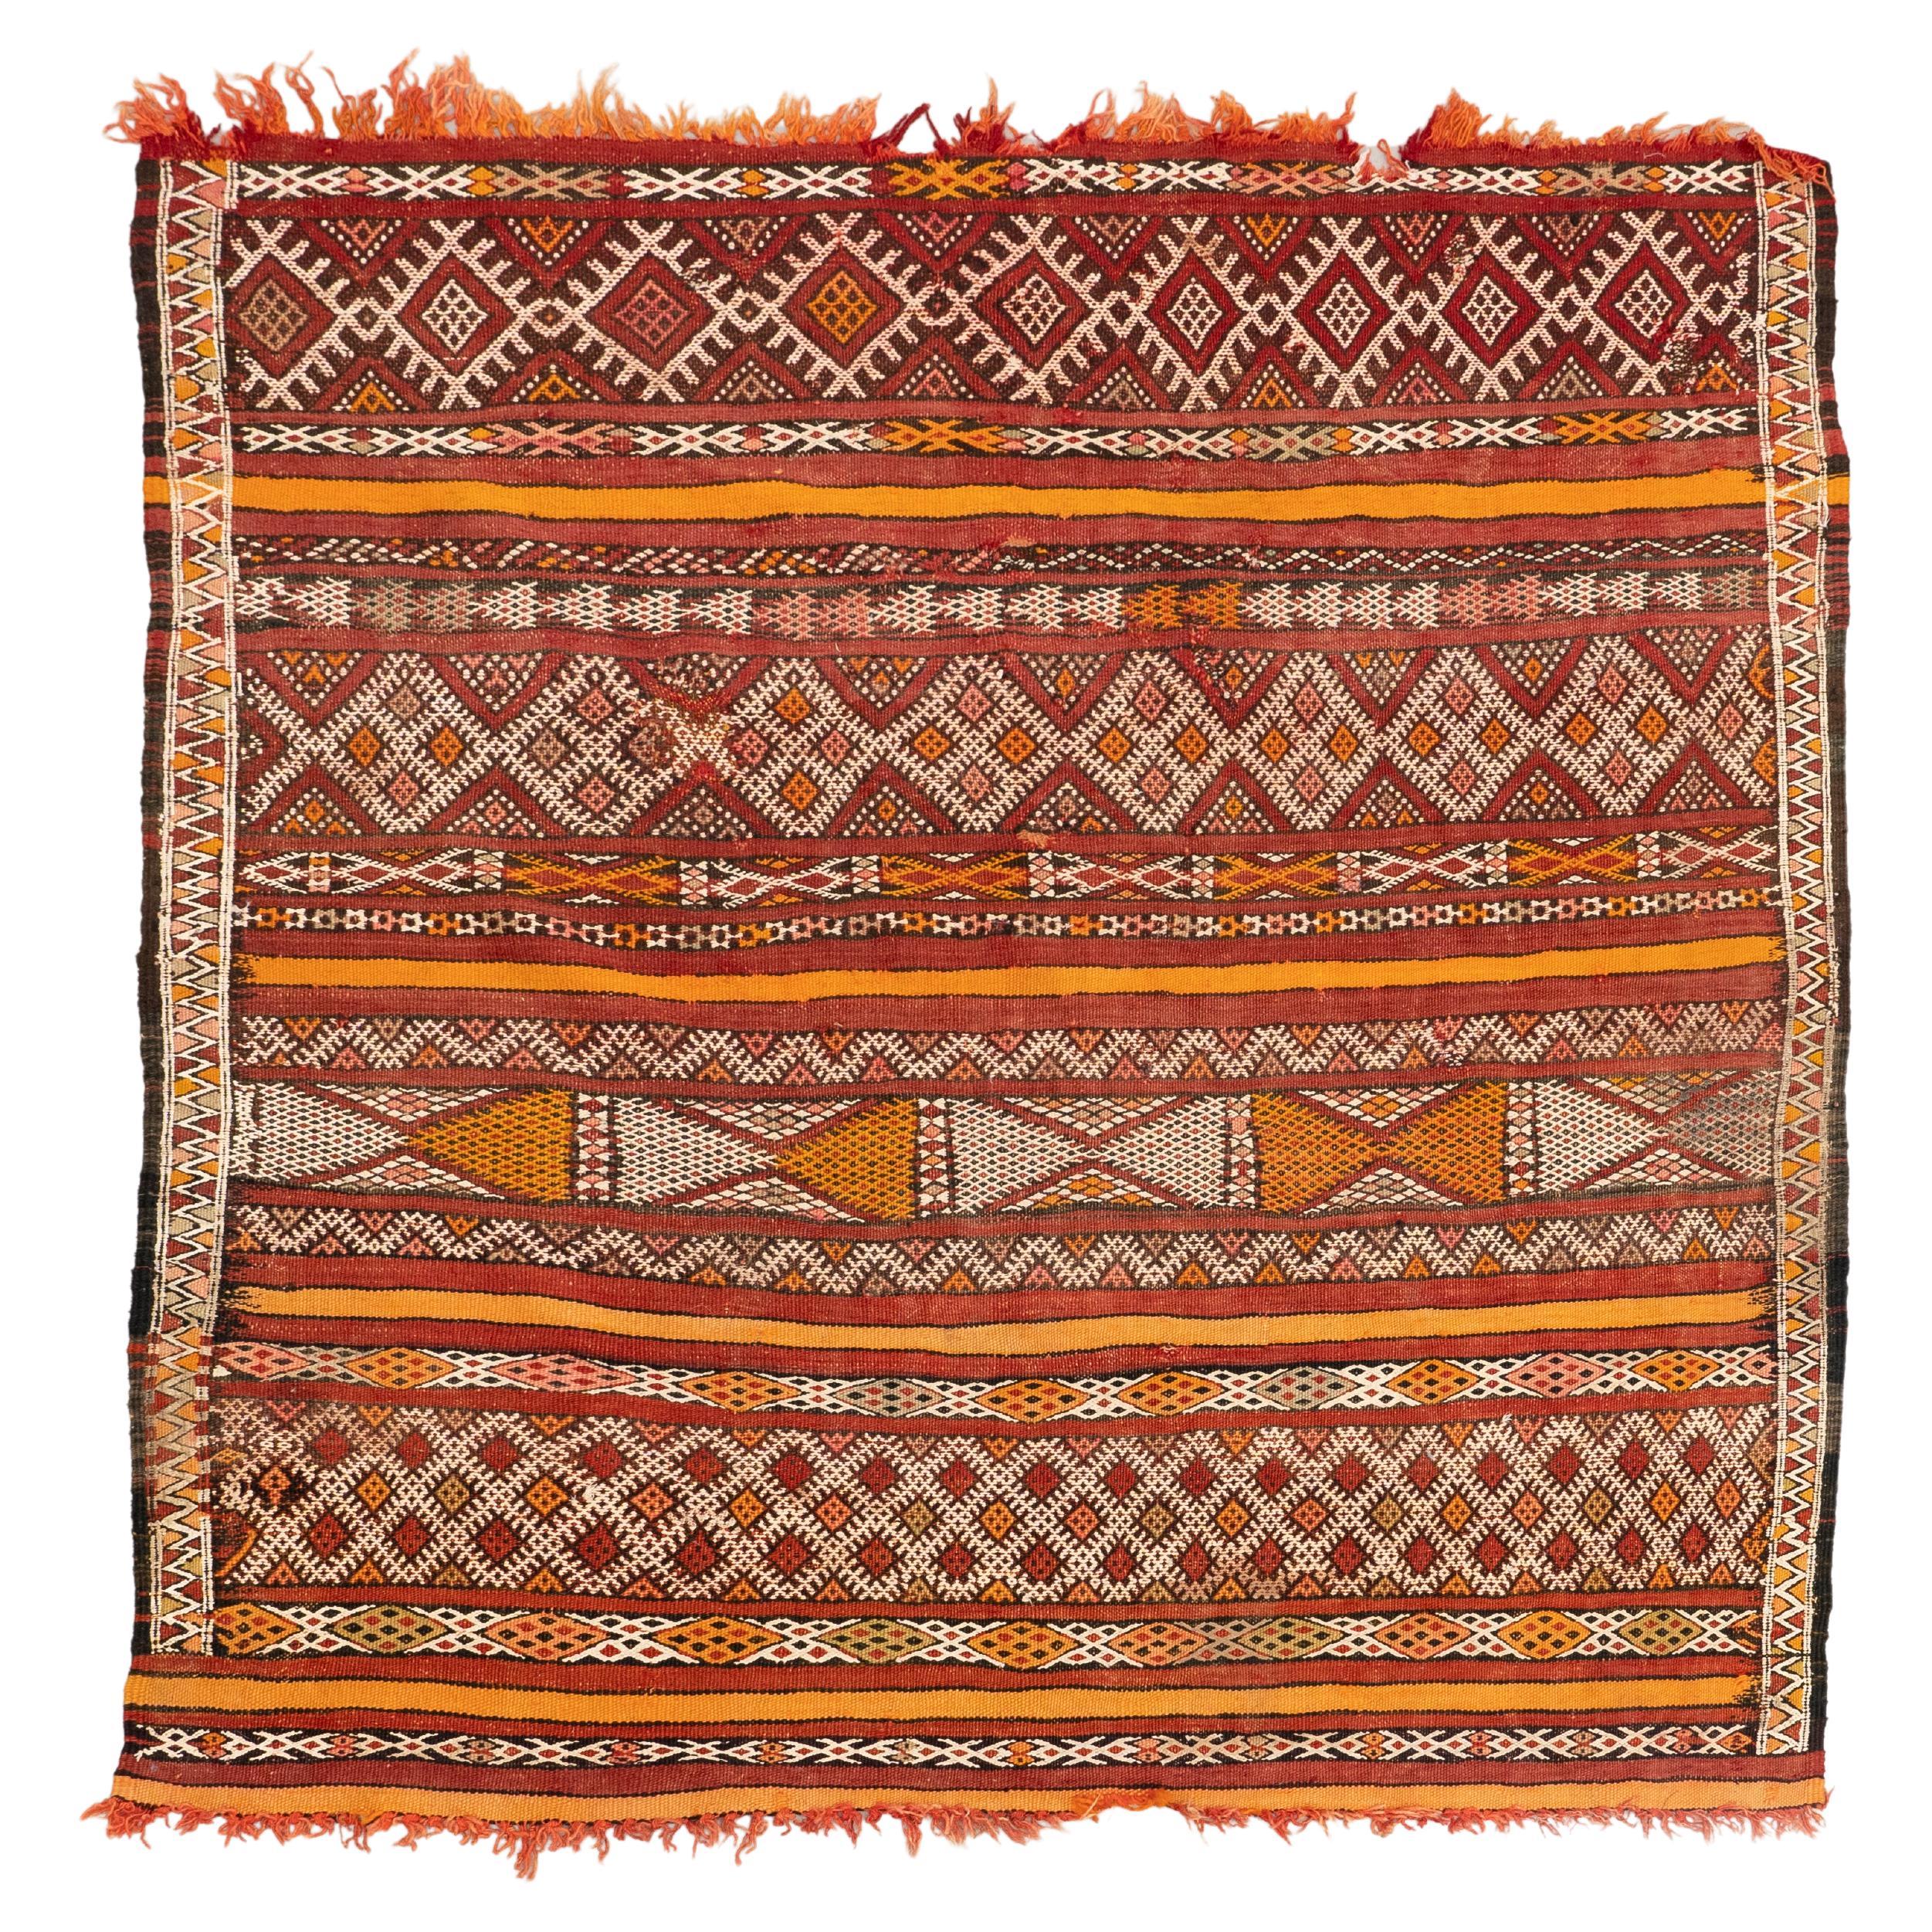 Tapis marocain en laine tissée à la main